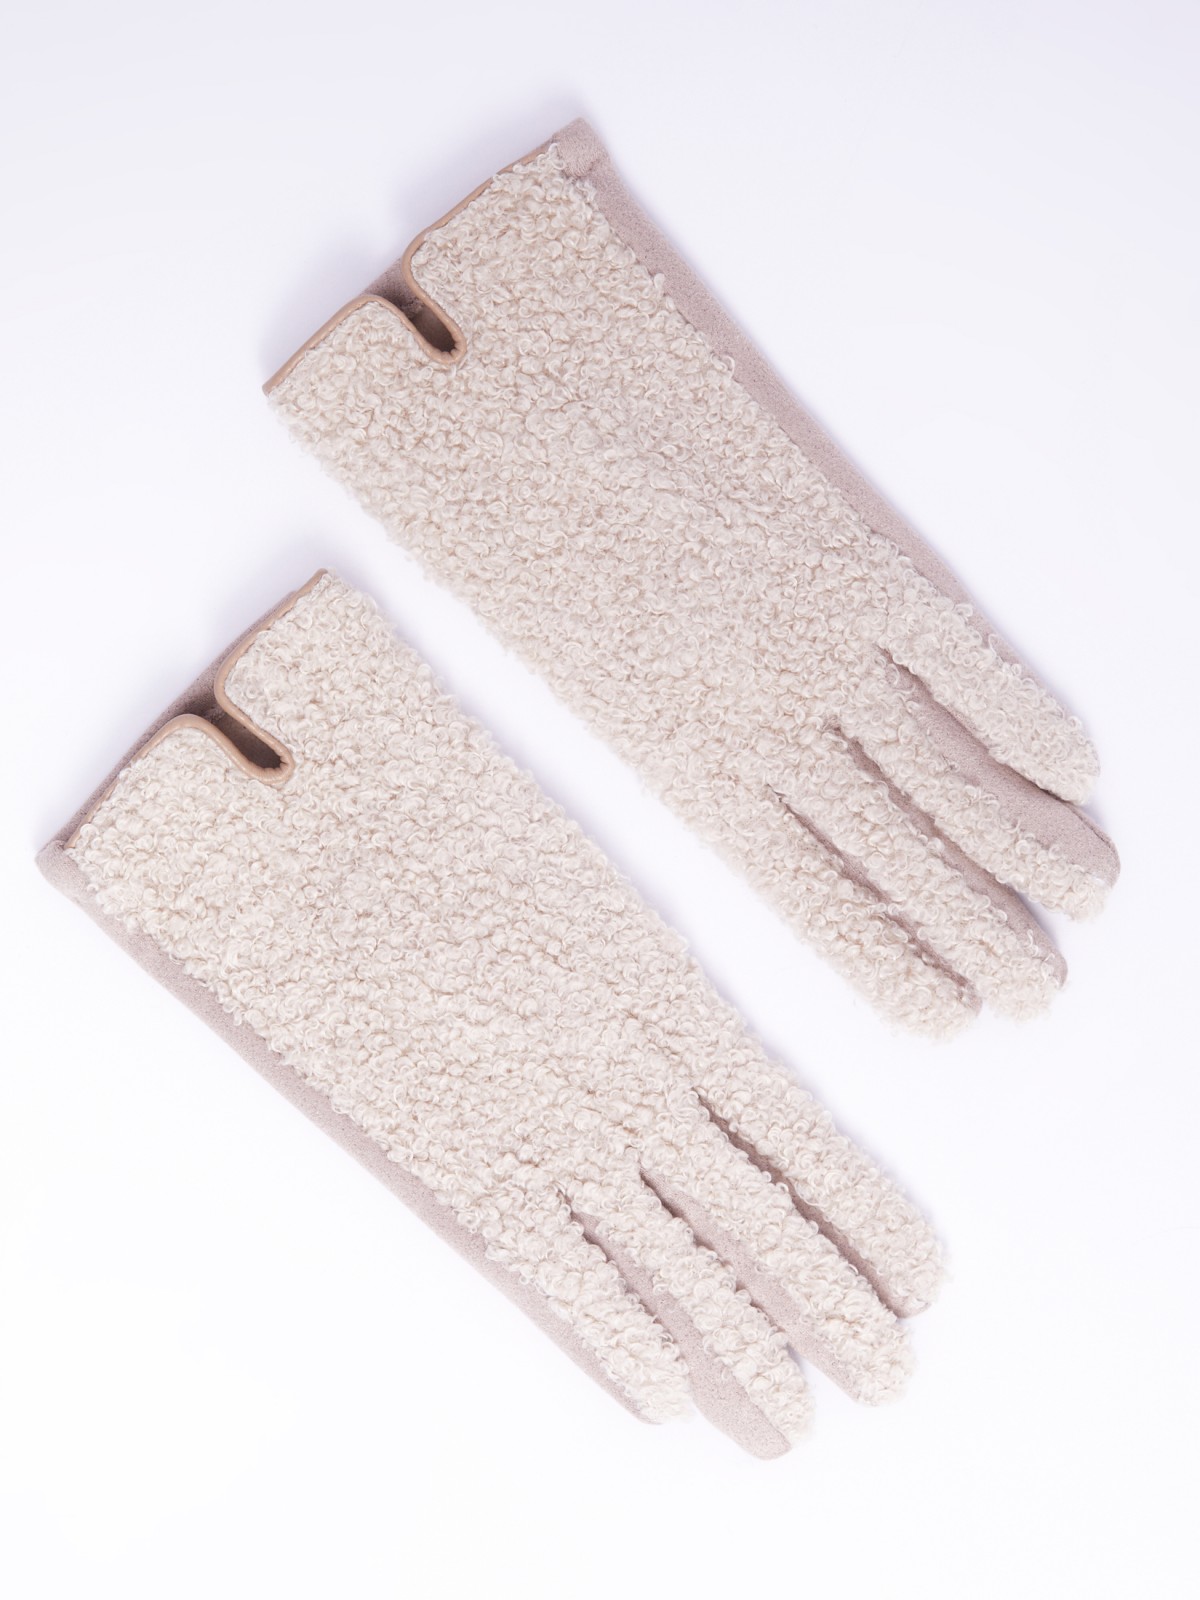 Утеплённые перчатки из искусственного меха с функцией Touch Screen zolla 023339659015, цвет бежевый, размер S